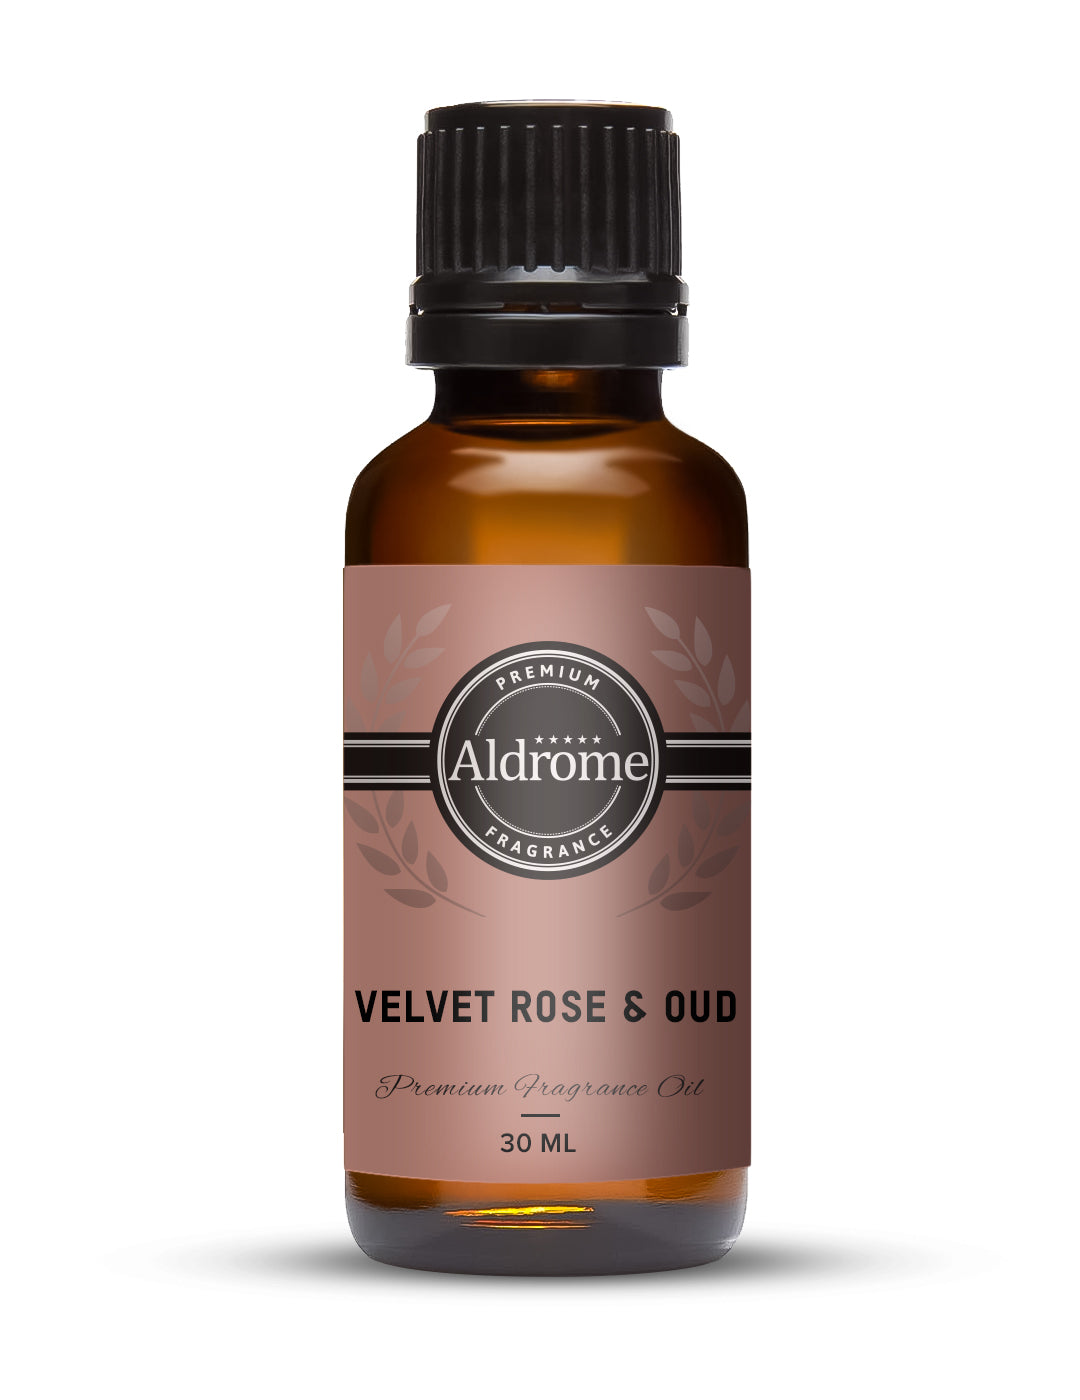 Buy Velvet Rose & Oud Fragrance Oil - 30ml | Aldrome Premium Fragrance Oil